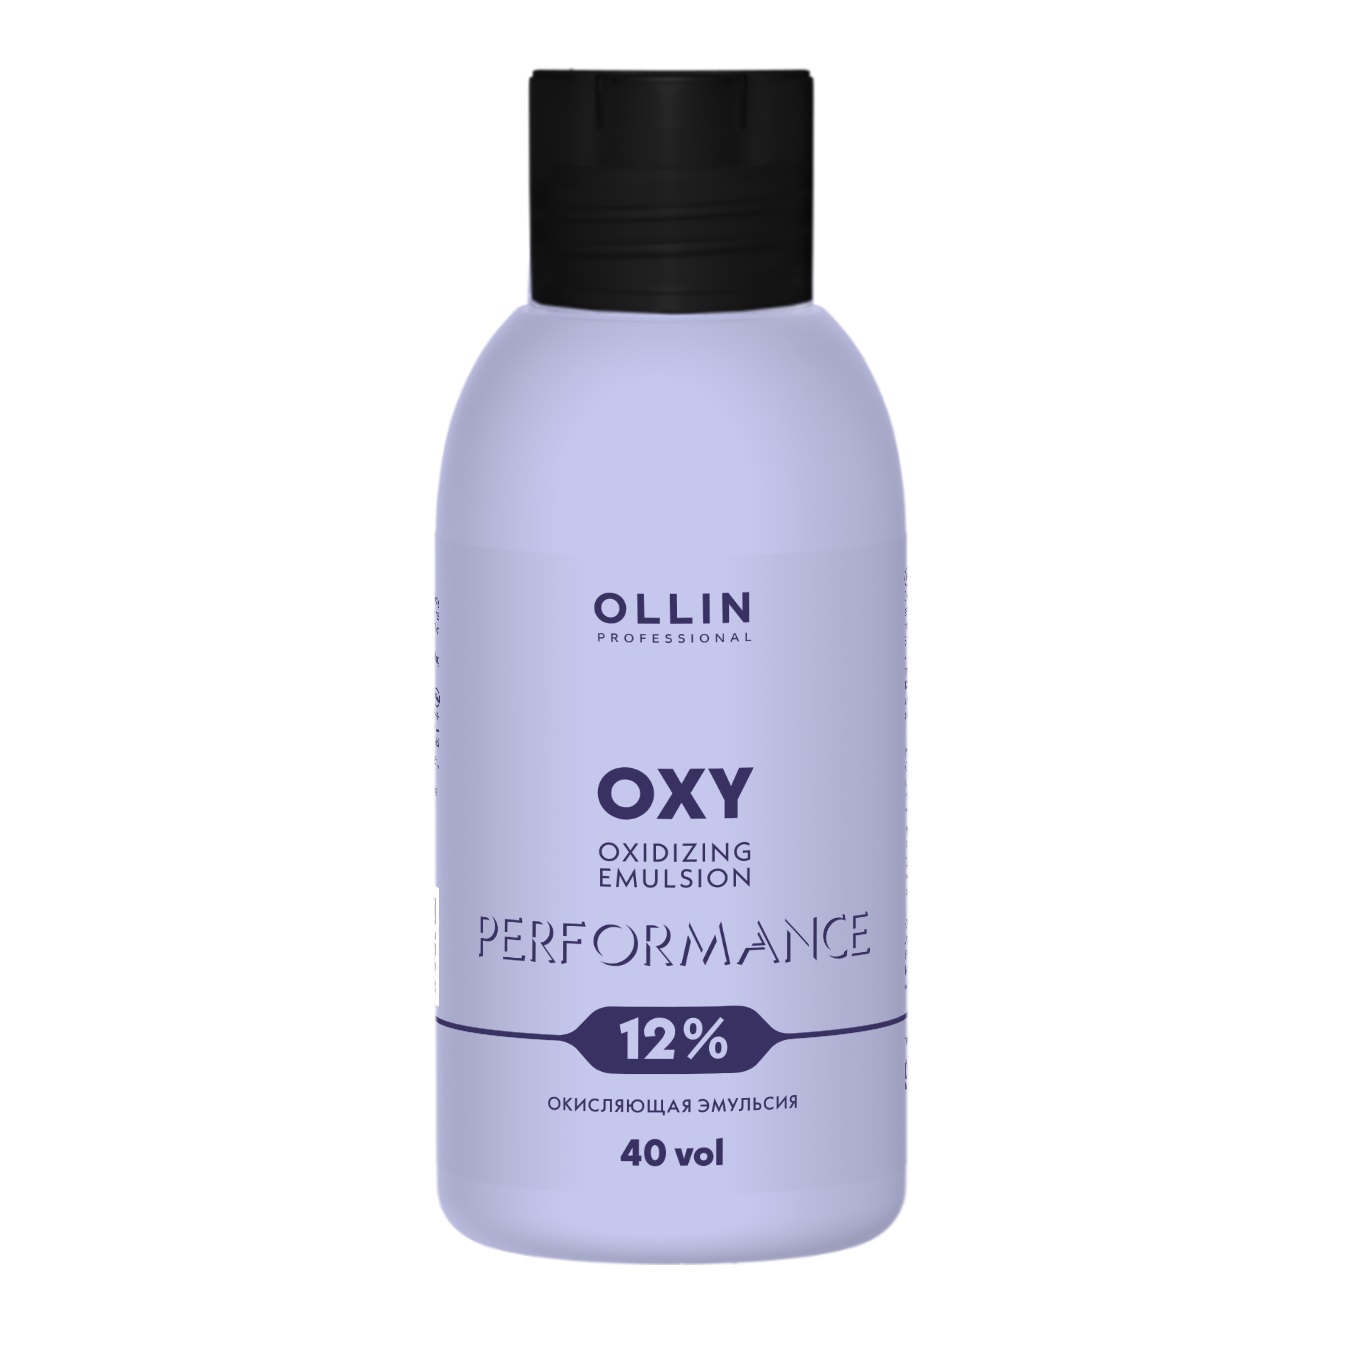 Ollin Professional Окисляющая эмульсия Oxidizing Emulsion Oxy 12% 40 vol, 90 мл (Ollin Professional, Performance)